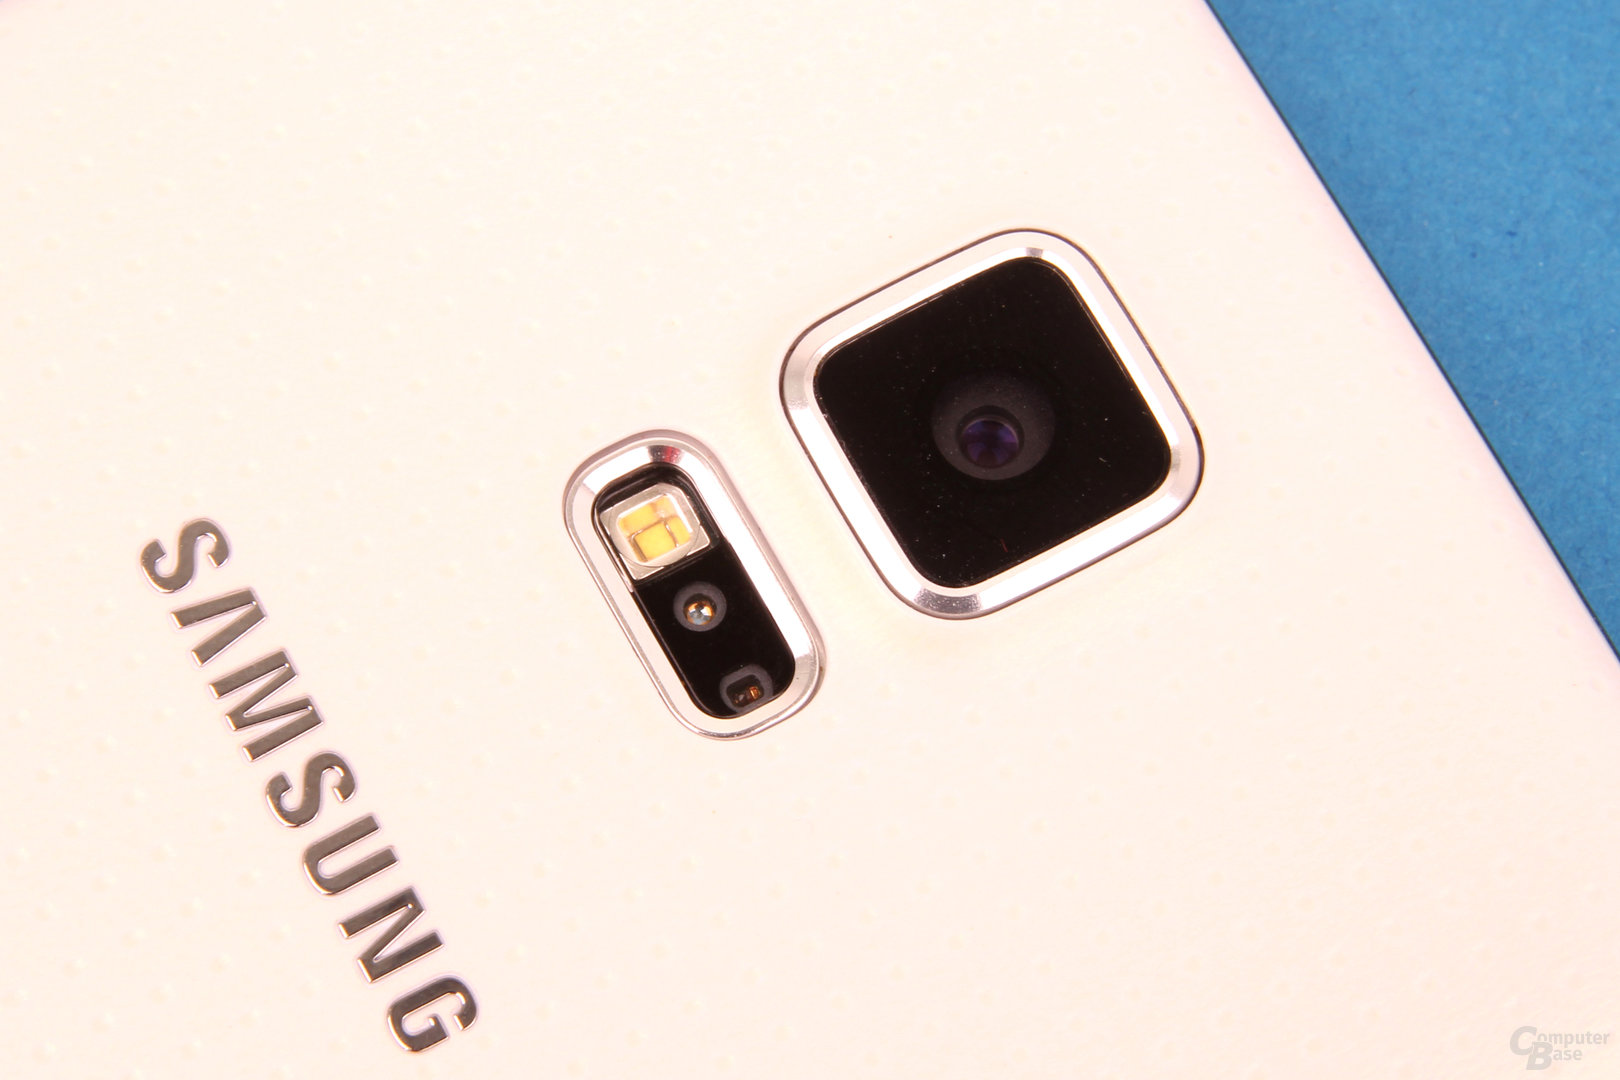 Samsung Galaxy S5: Herzfrequenzmesser im Blitz / 16-MP-Kamera